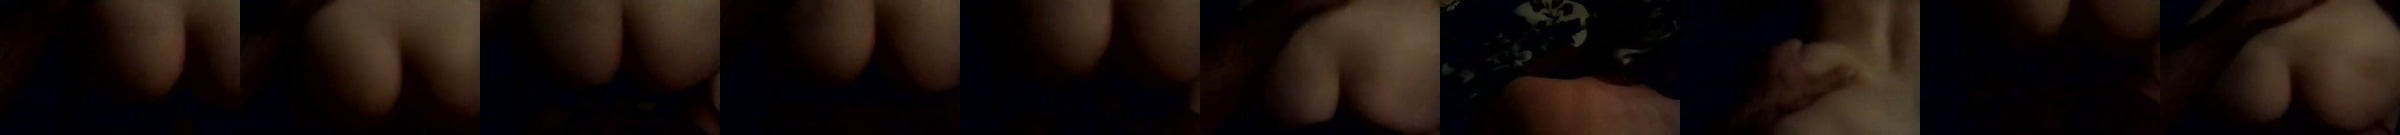 Estonian Girl Sucks A Big Turkish Dick Porn Da Xhamster